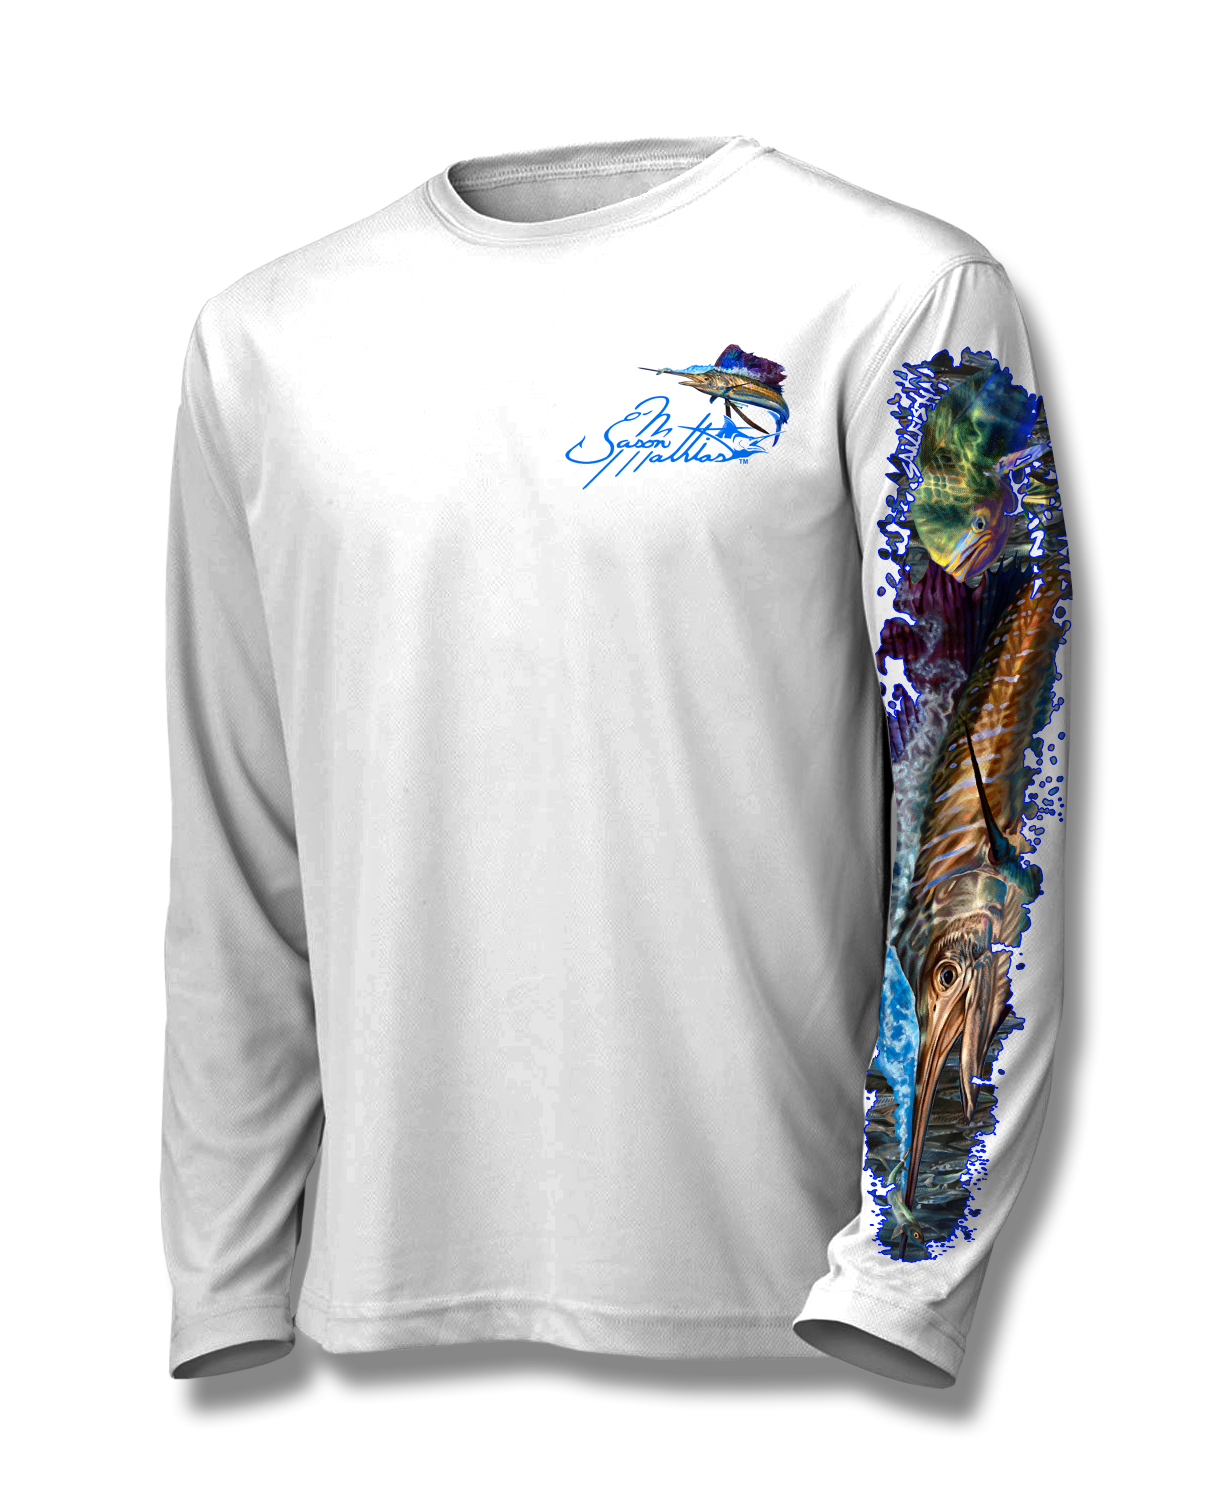 sailfish-mahi-shirt-jason-mathias-front-white.png